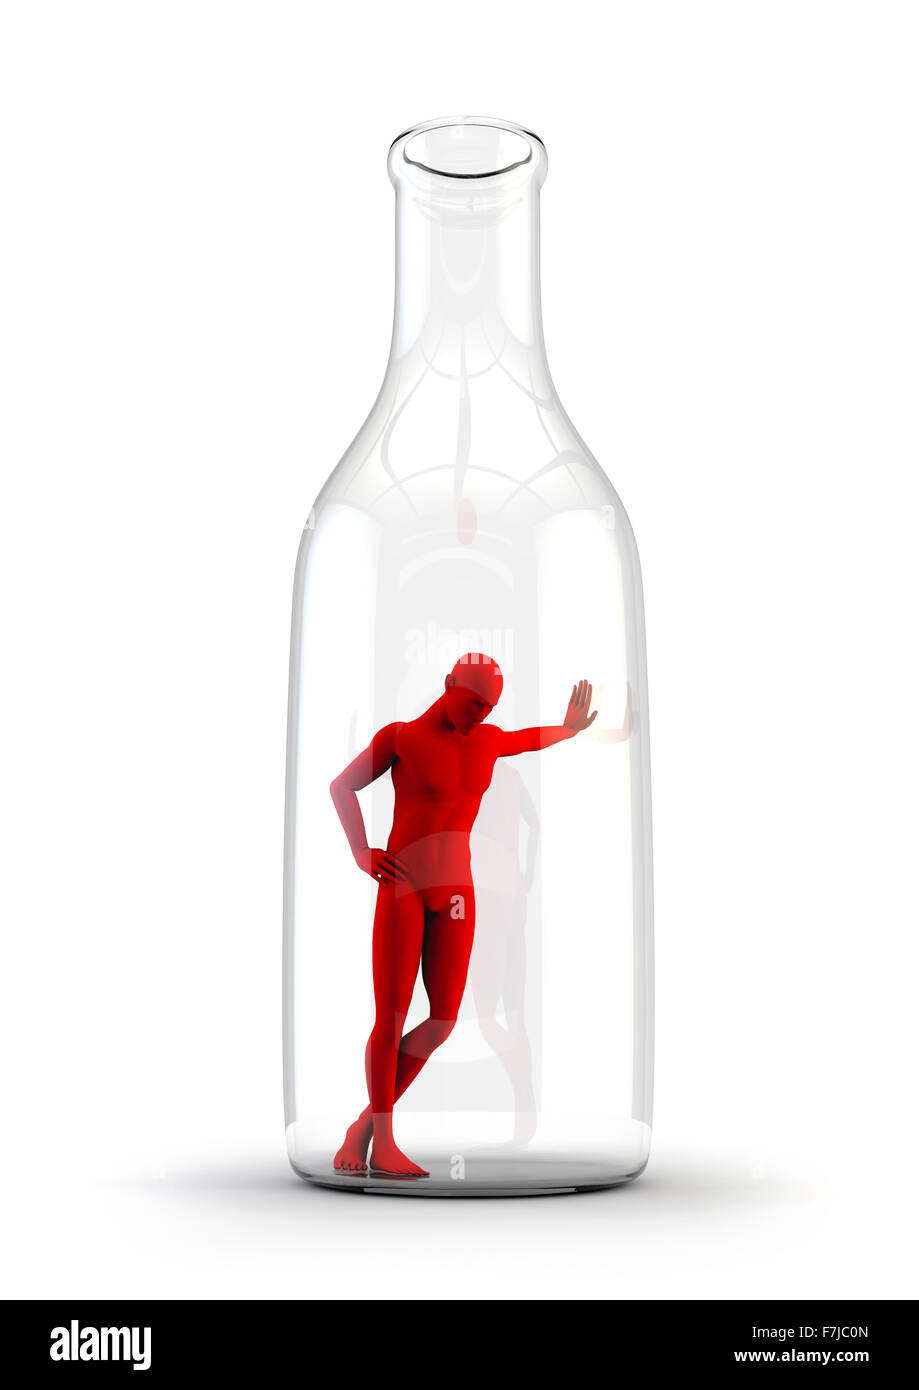 La vie dans la bouteille / Alcoolisme concept avec triste figure masculine appuyé contre l'intérieur d'une bouteille Banque D'Images